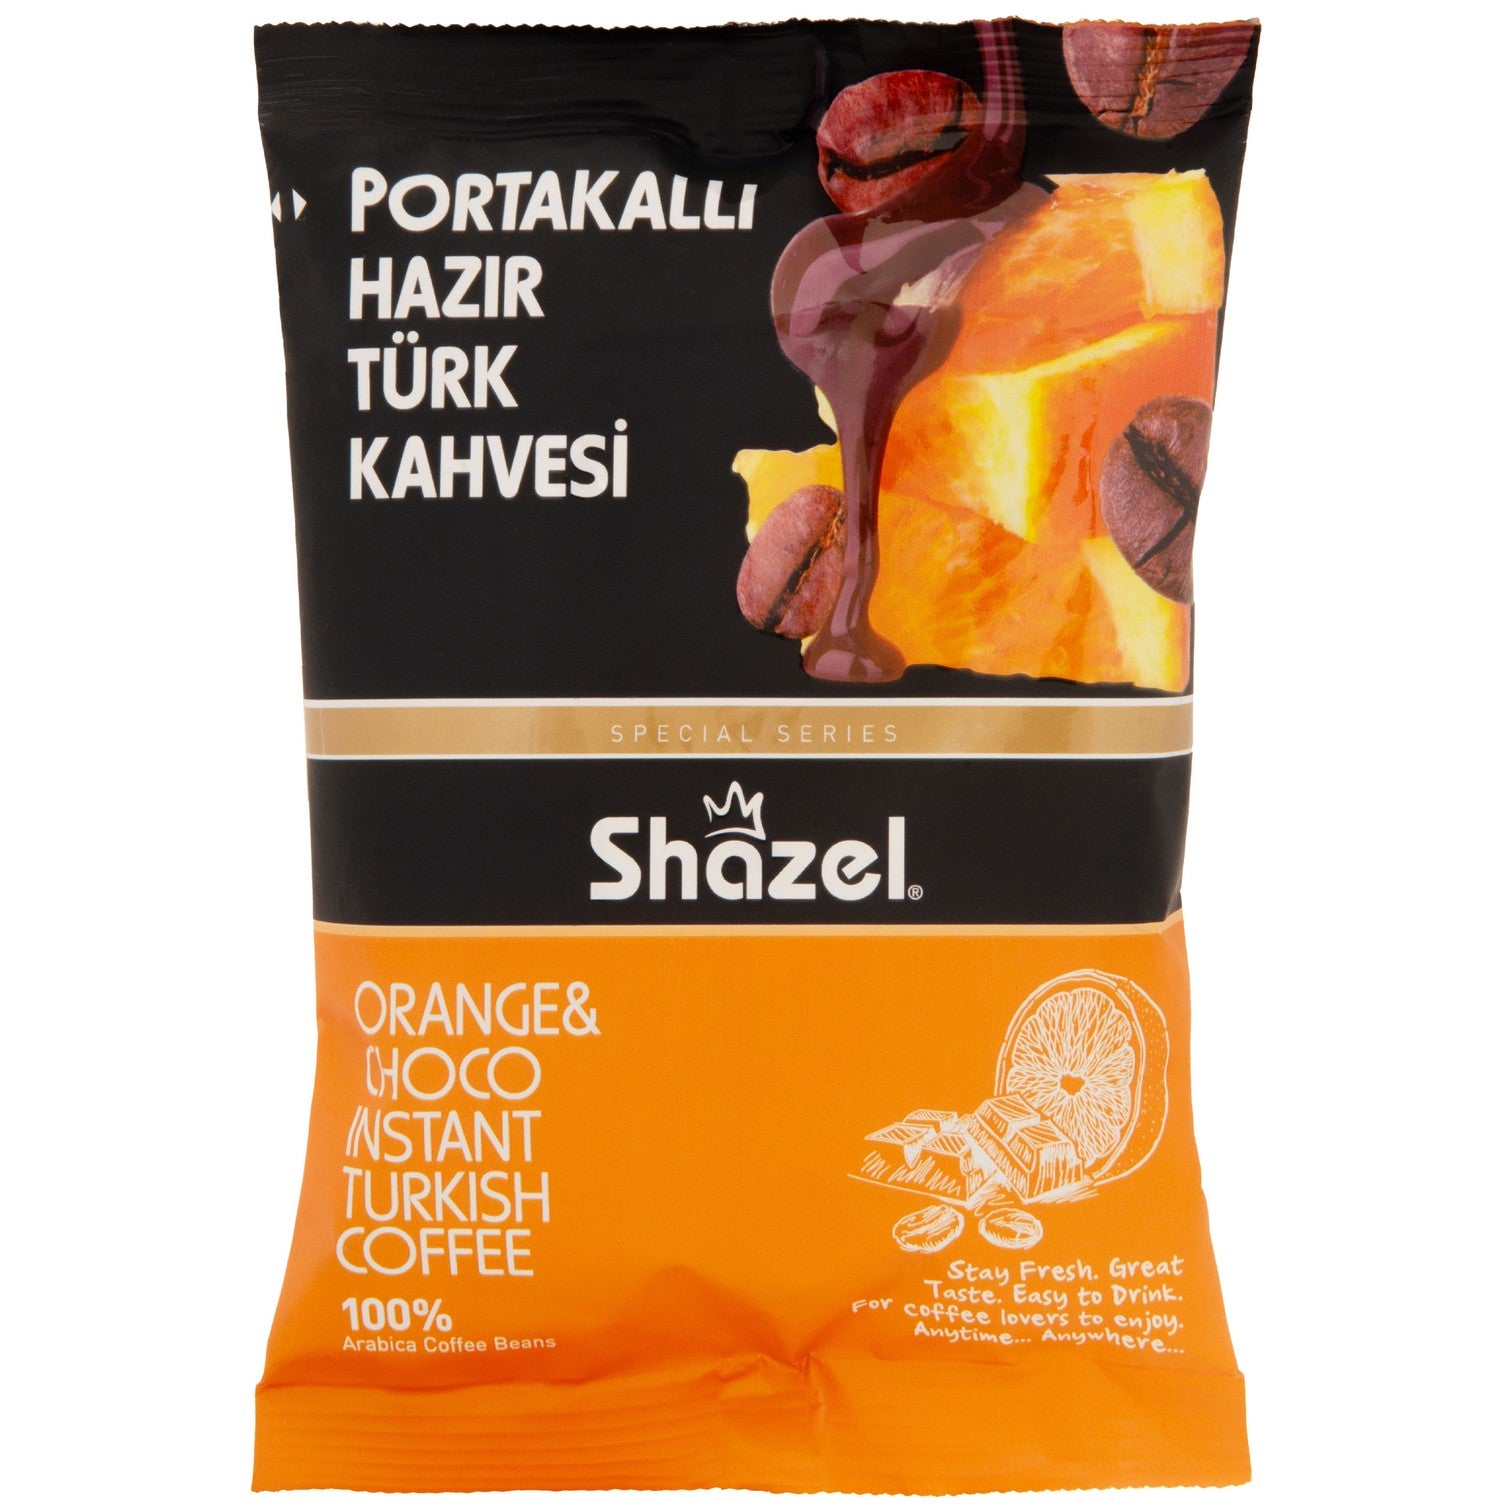 Shazel Portakallı Hazır Türk Kahvesi 100Gr (Aromalı)